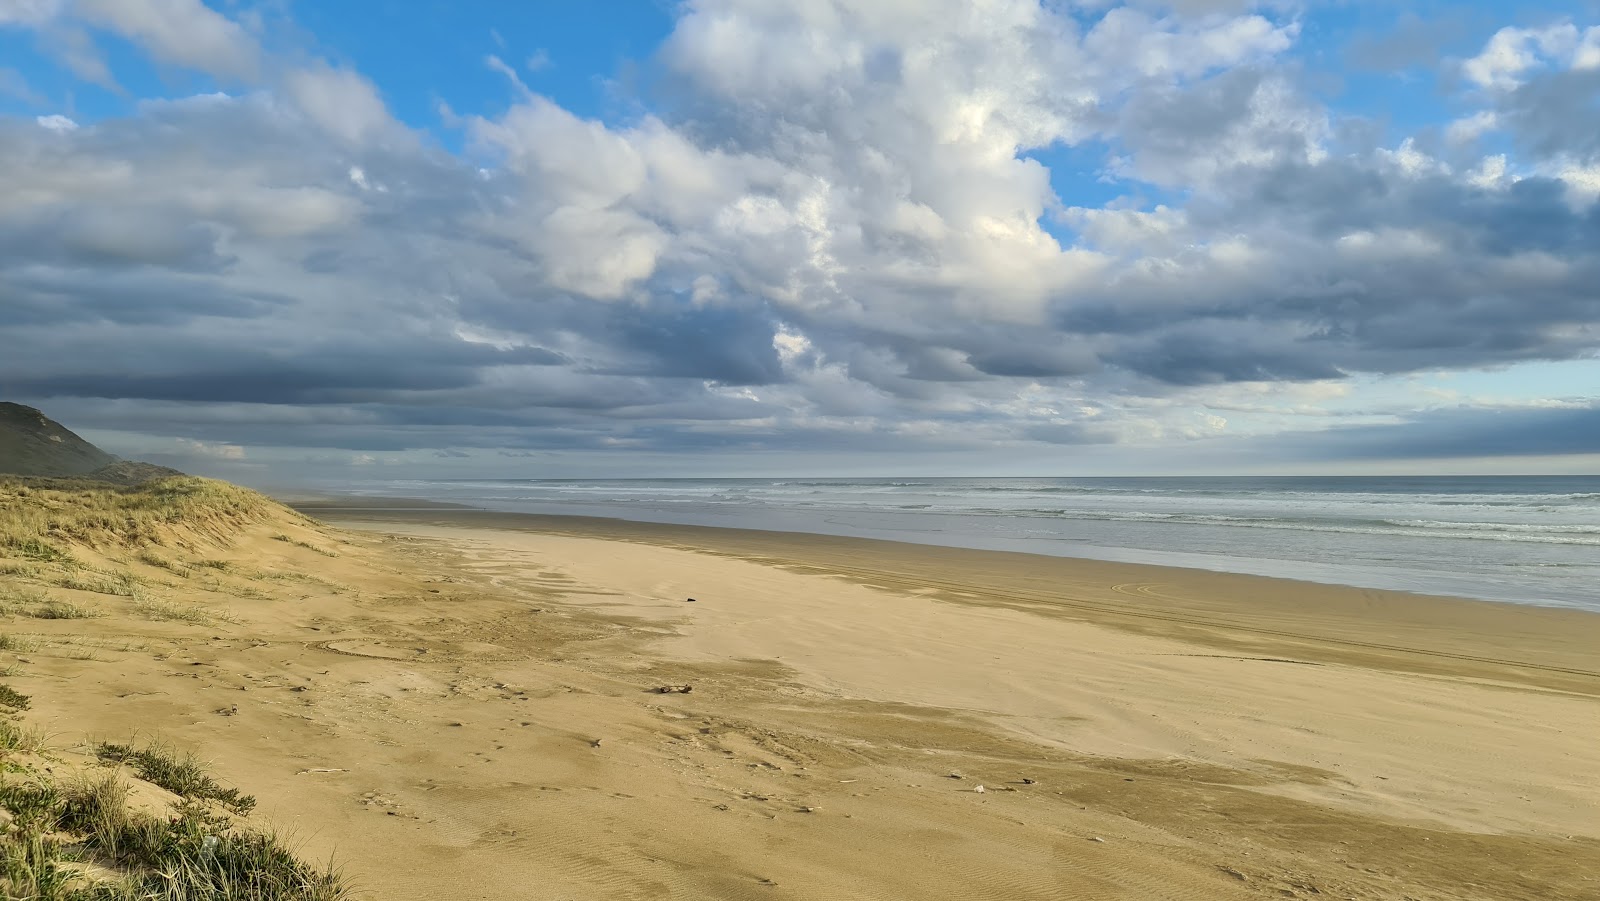 Fotografie cu Glinks Gully Beach cu o suprafață de nisip fin strălucitor